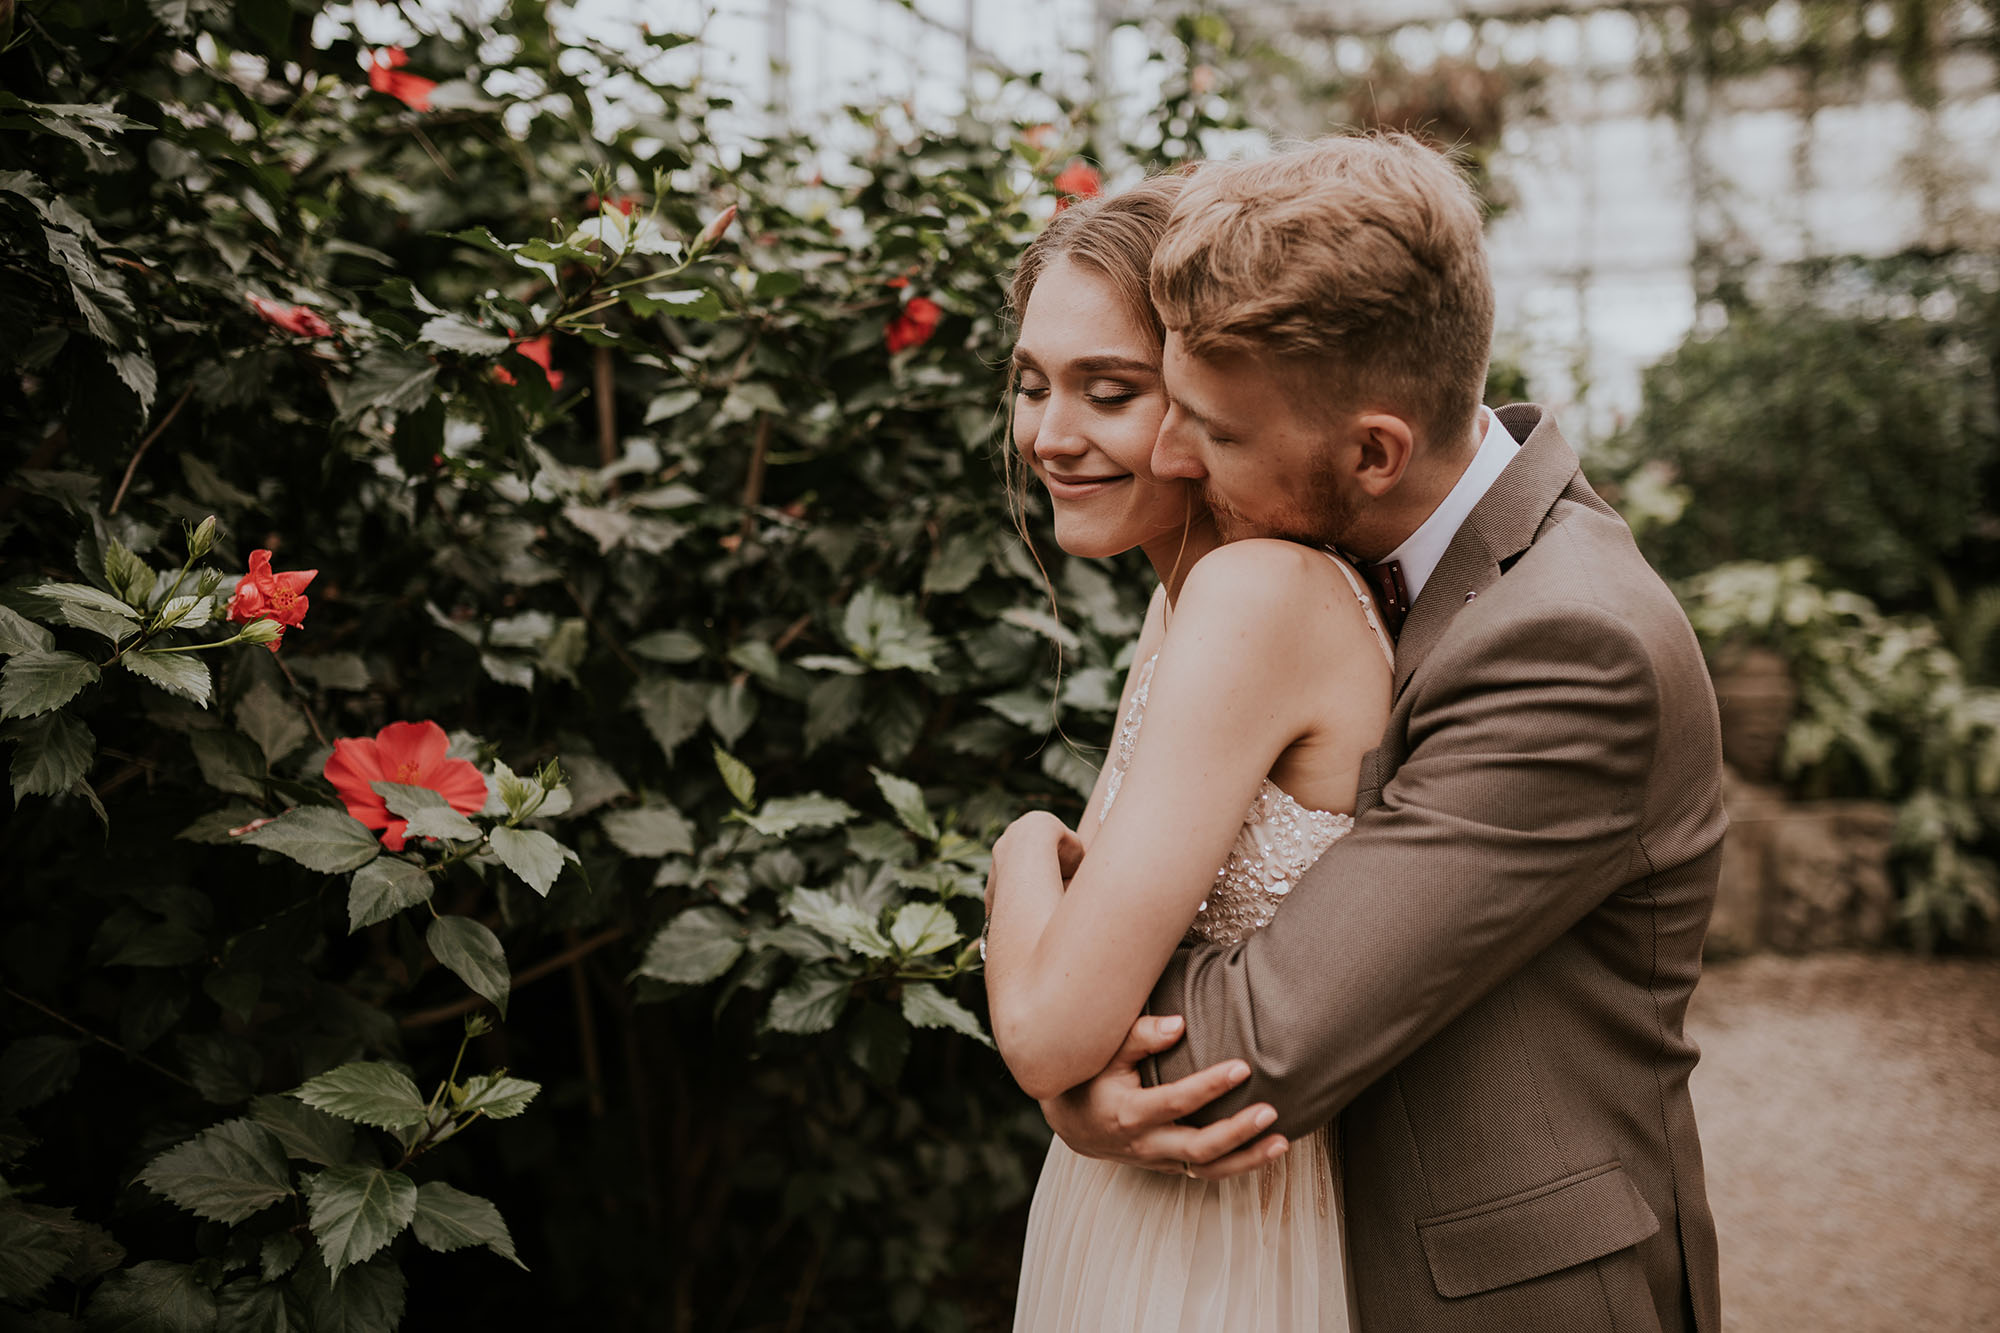 fotograf plener sesja ślubna powsin szklarnia ogród botaniczny